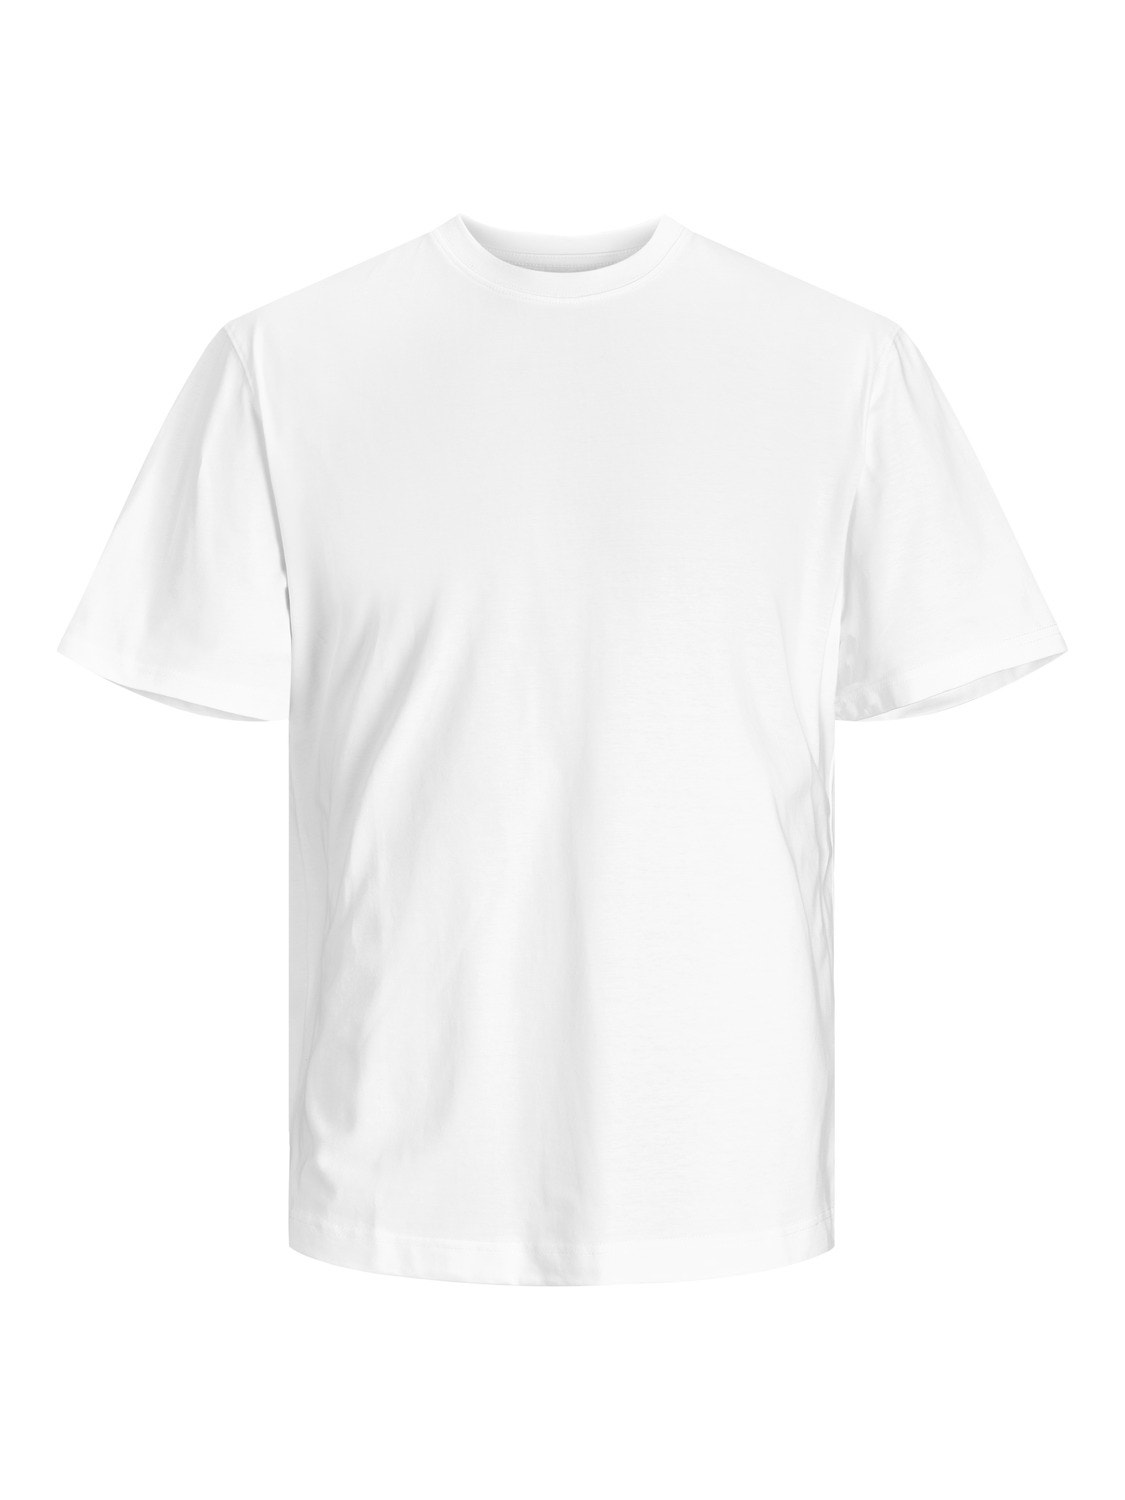 Jack & Jones Plain O-Neck T-shirt -White - 12190467